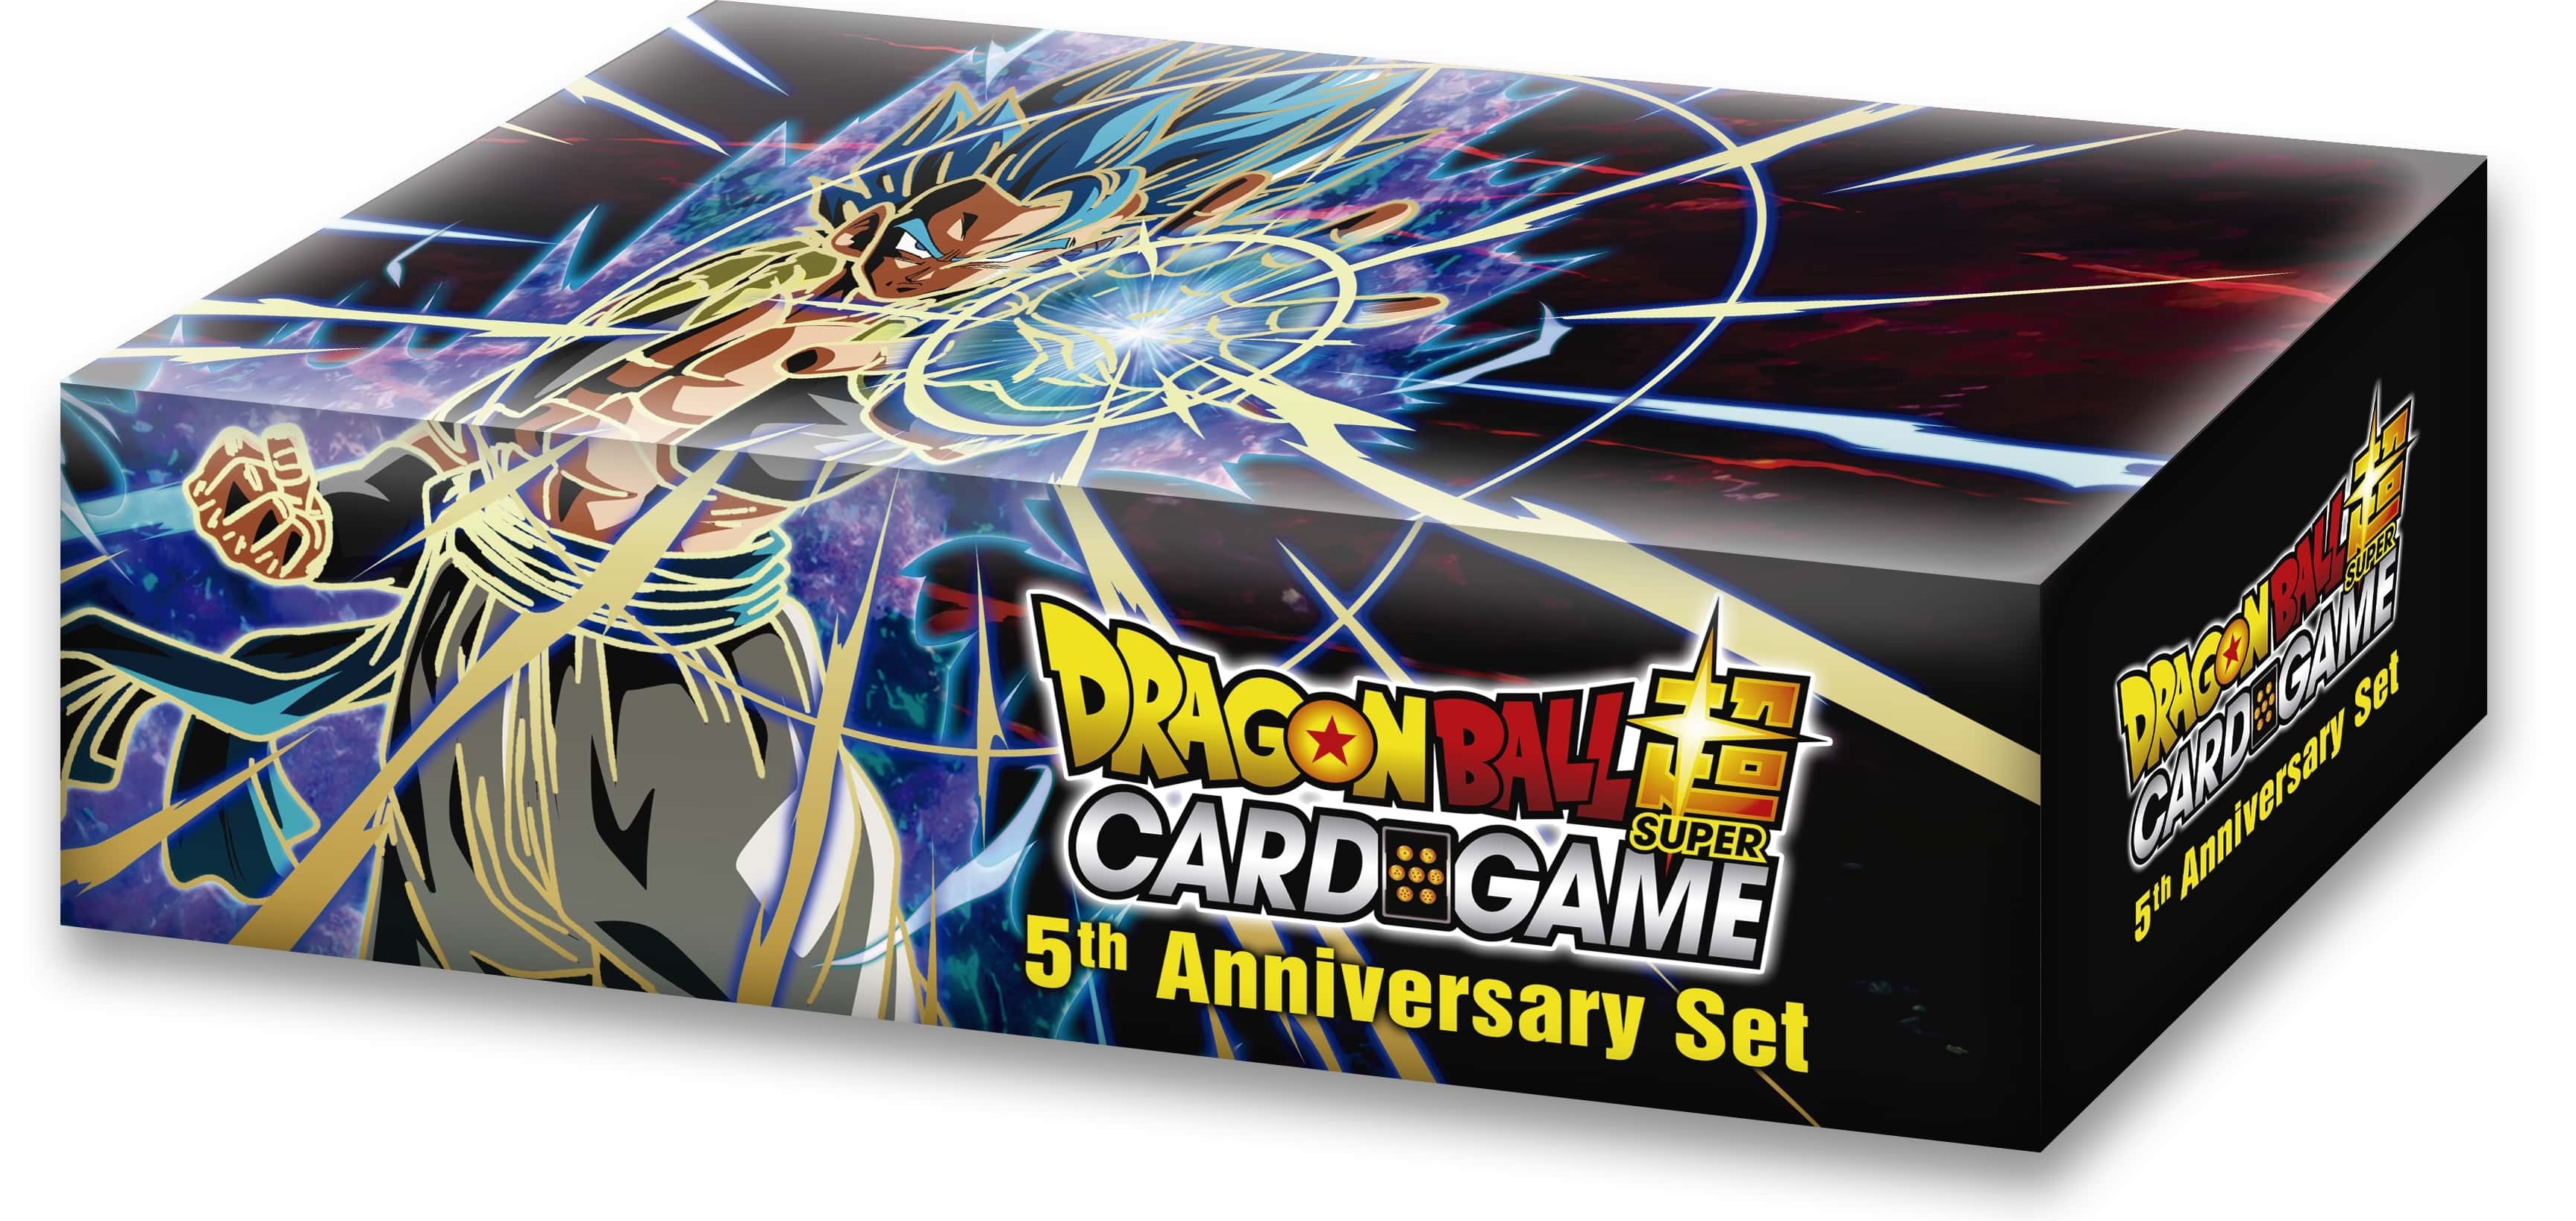 Dragon Ball Card Game - 5th Anniversary Set | Bandai image8